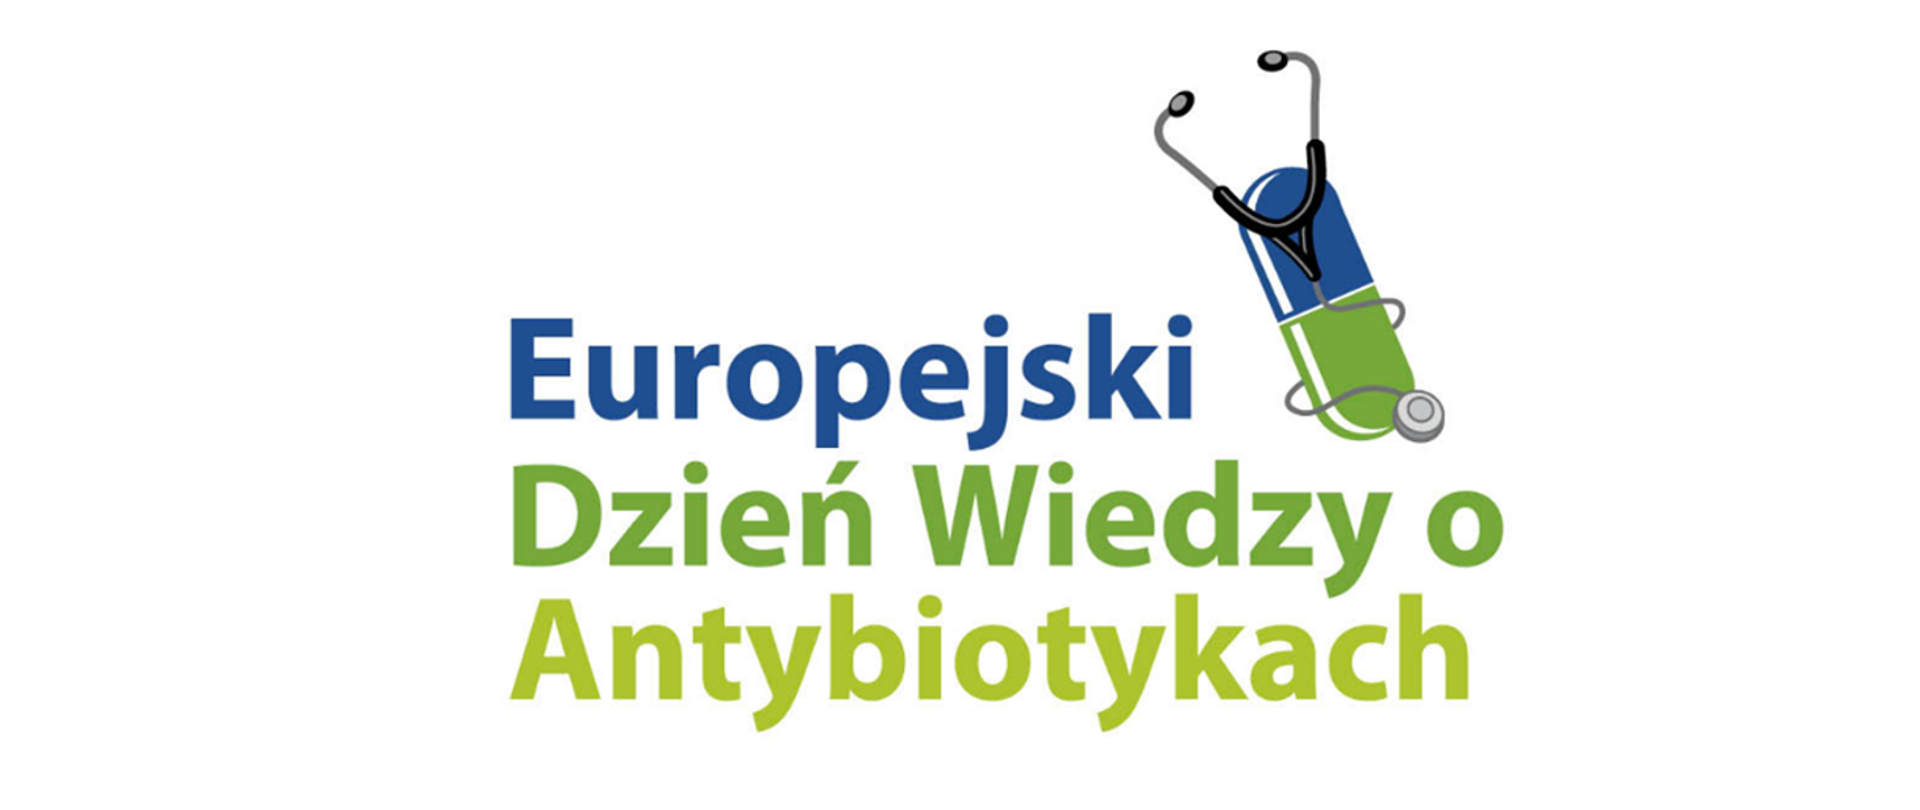 Europejski Dzień Wiedzy o Antybiotykach 2023